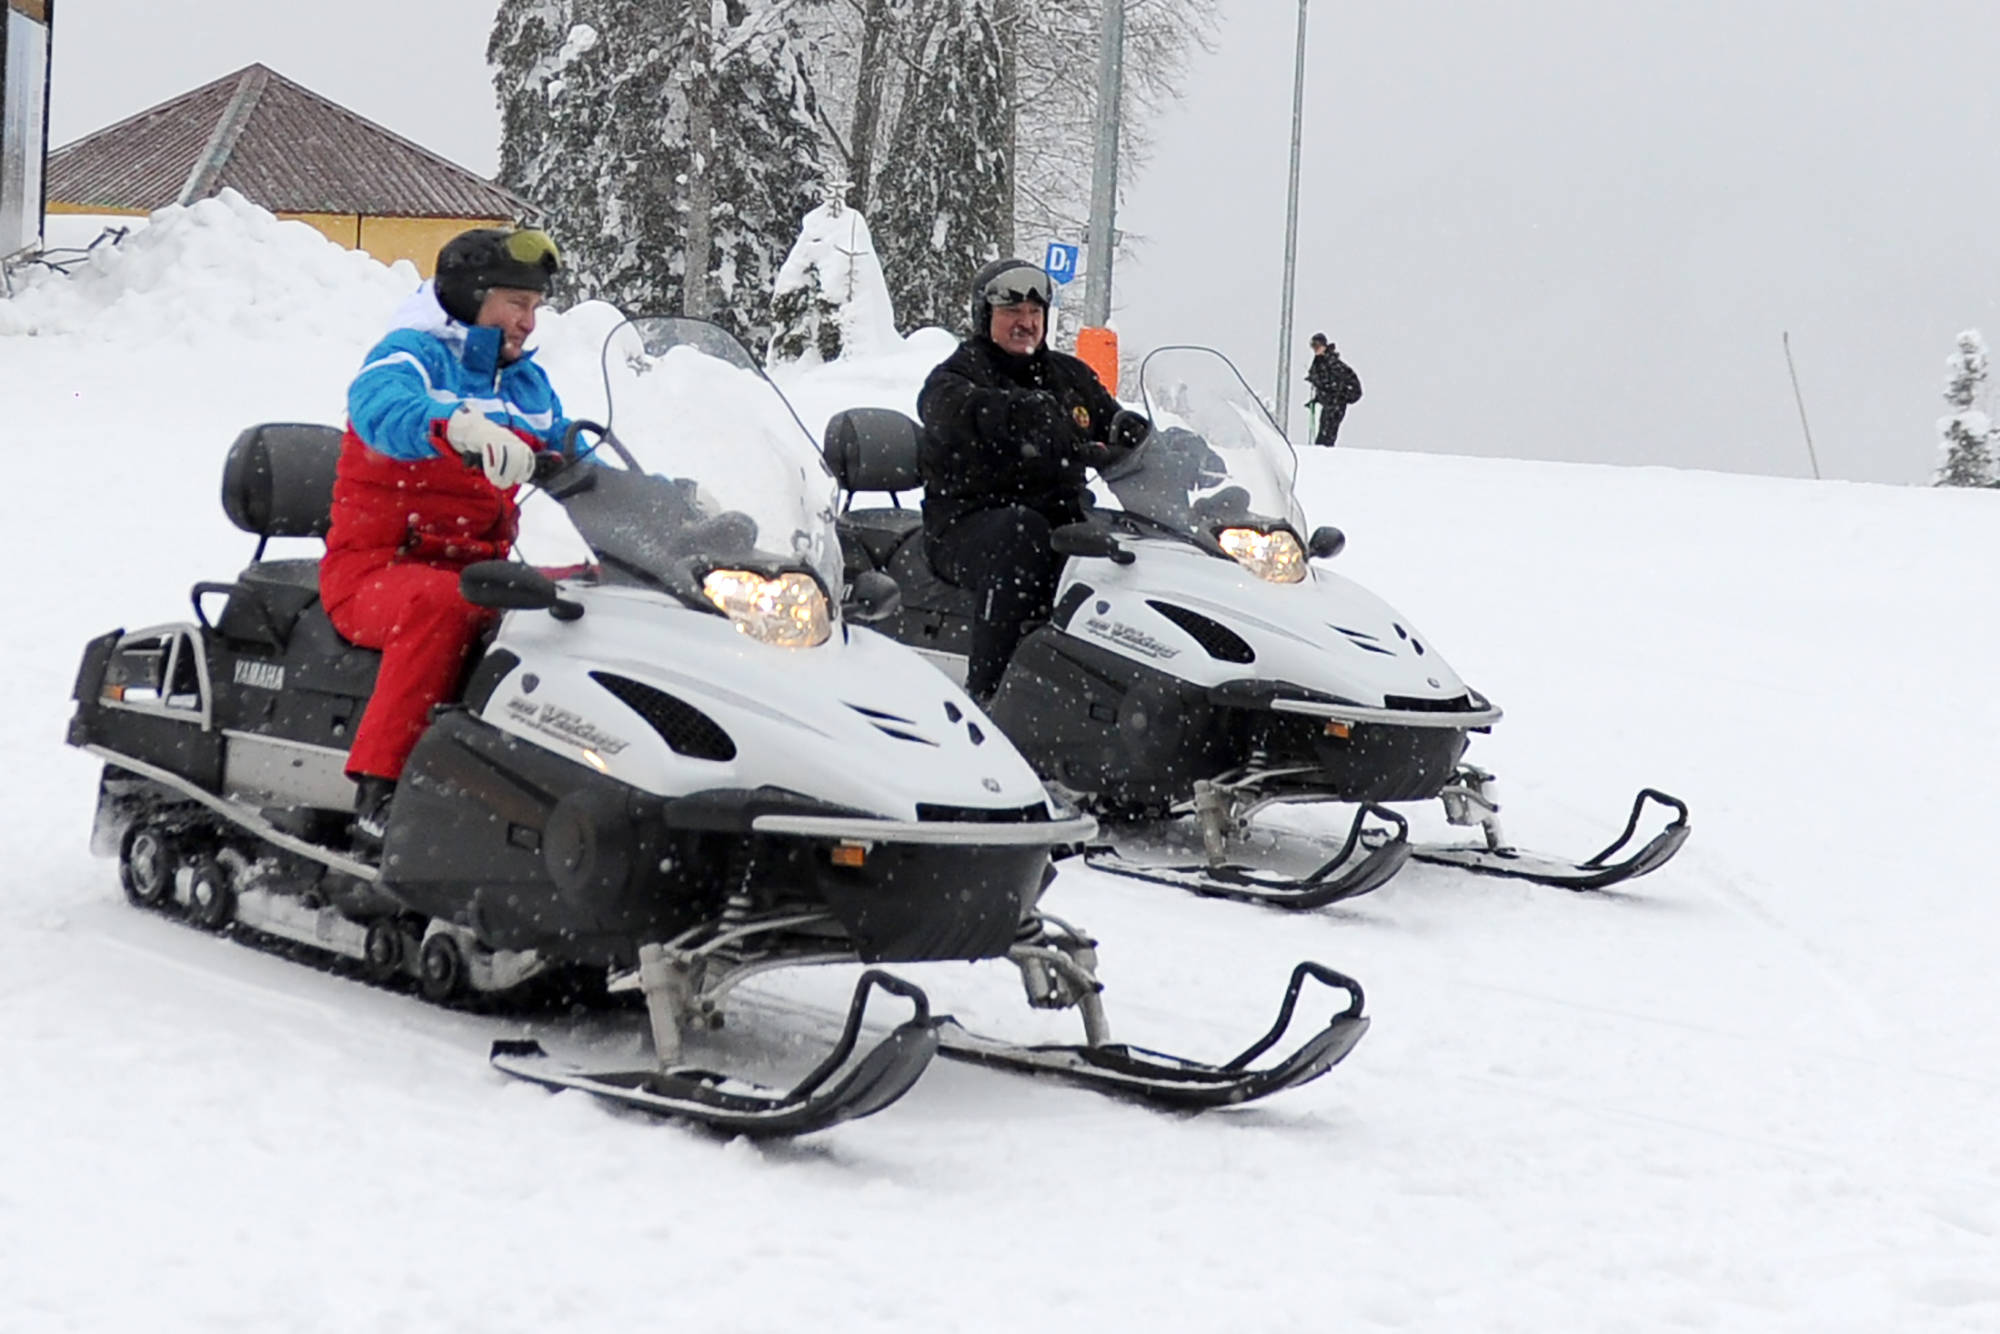 El presidente ruso Vladimir Putin y su homólogo bielorruso Alexander Lukashenko montan en motos de nieve en los terrenos del Centro Turístico de Montaña Gazprom. © Alexei Druzhinin/Oficina Presidencial Rusa de Prensa e Información/TASS/Sipa USA